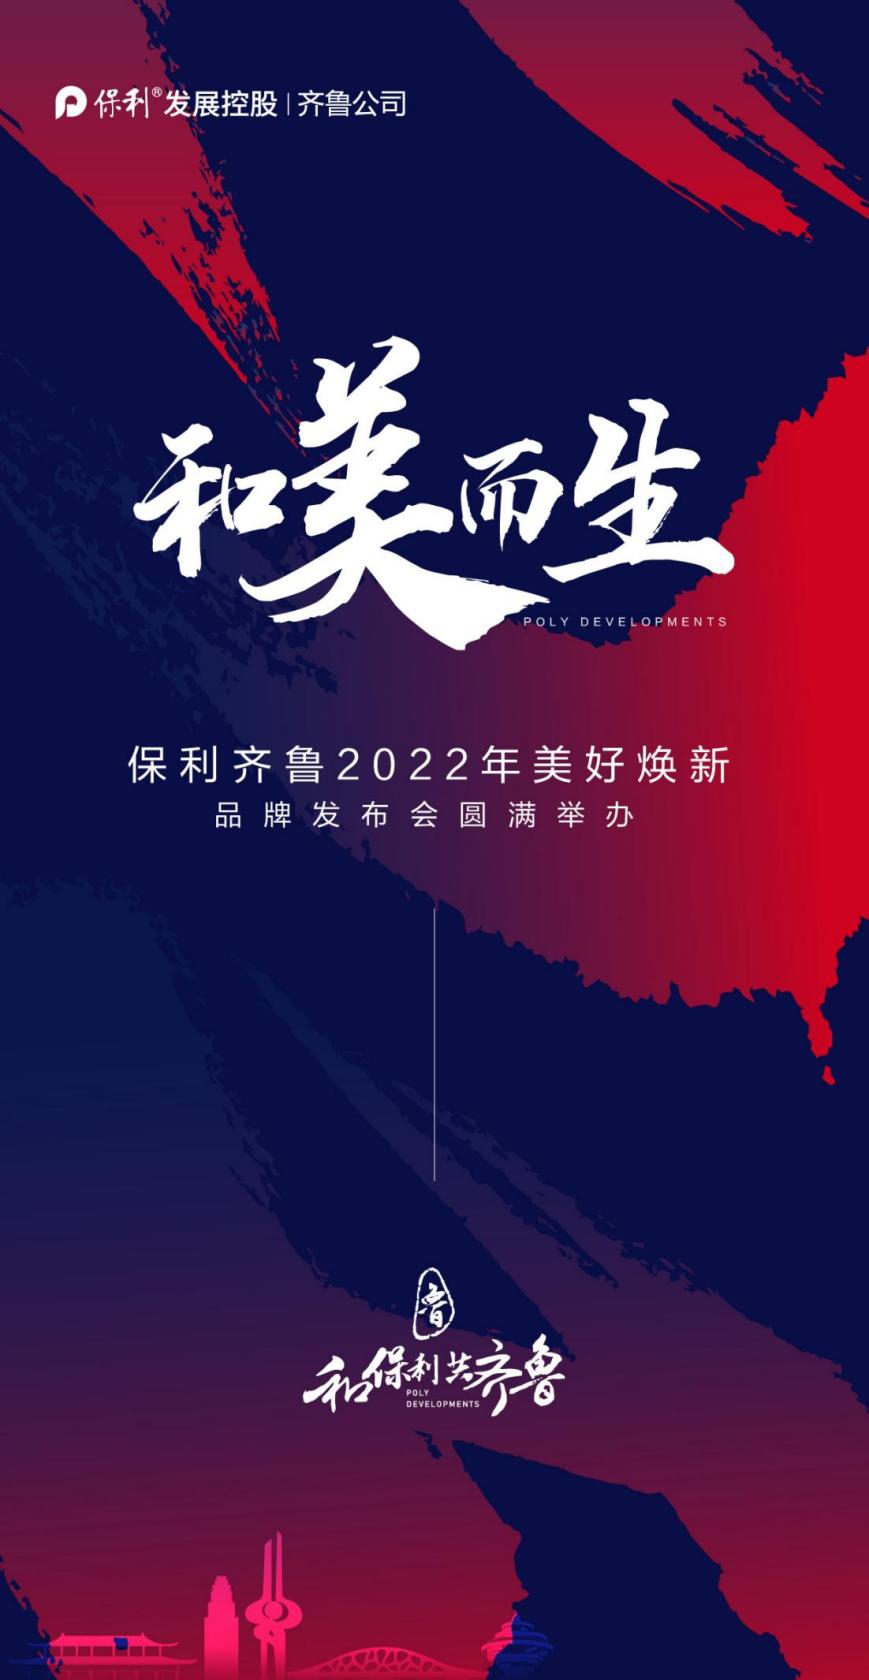 巩固头部房企地位 保利发展齐鲁公司举办2022年品牌发布会_中国网地产